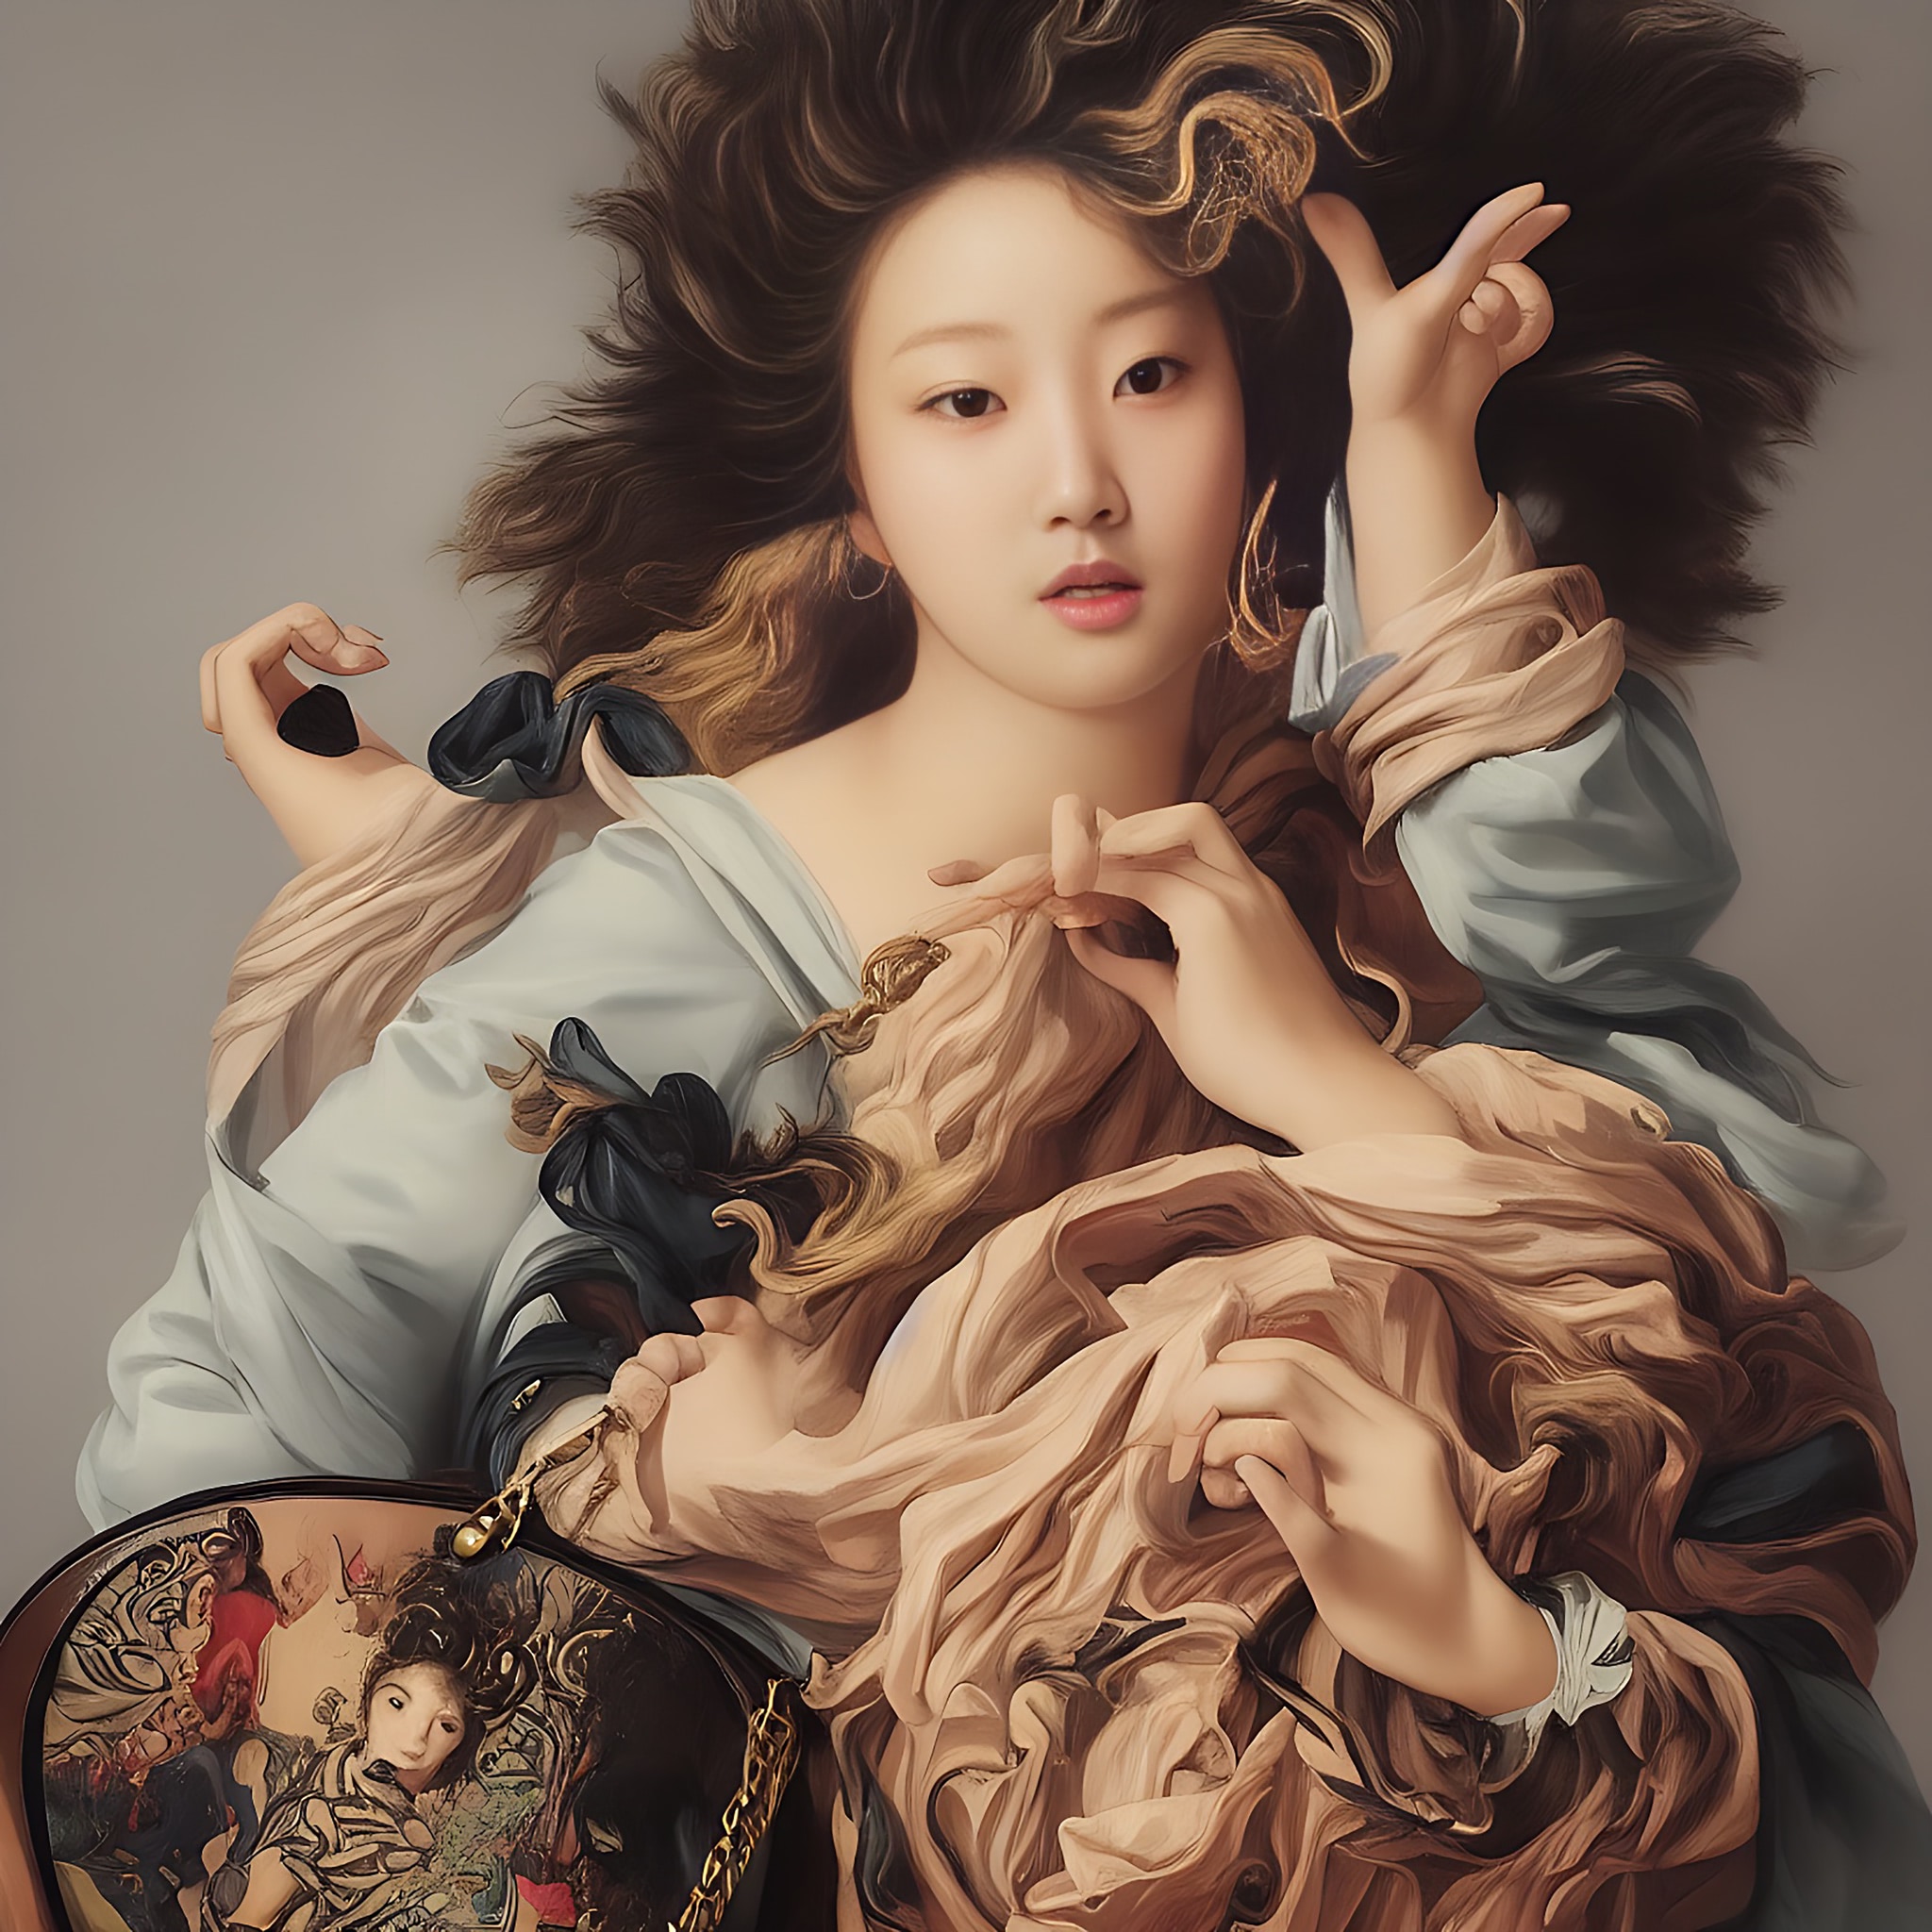 handbag-k-pop-star-baroque-painting-3